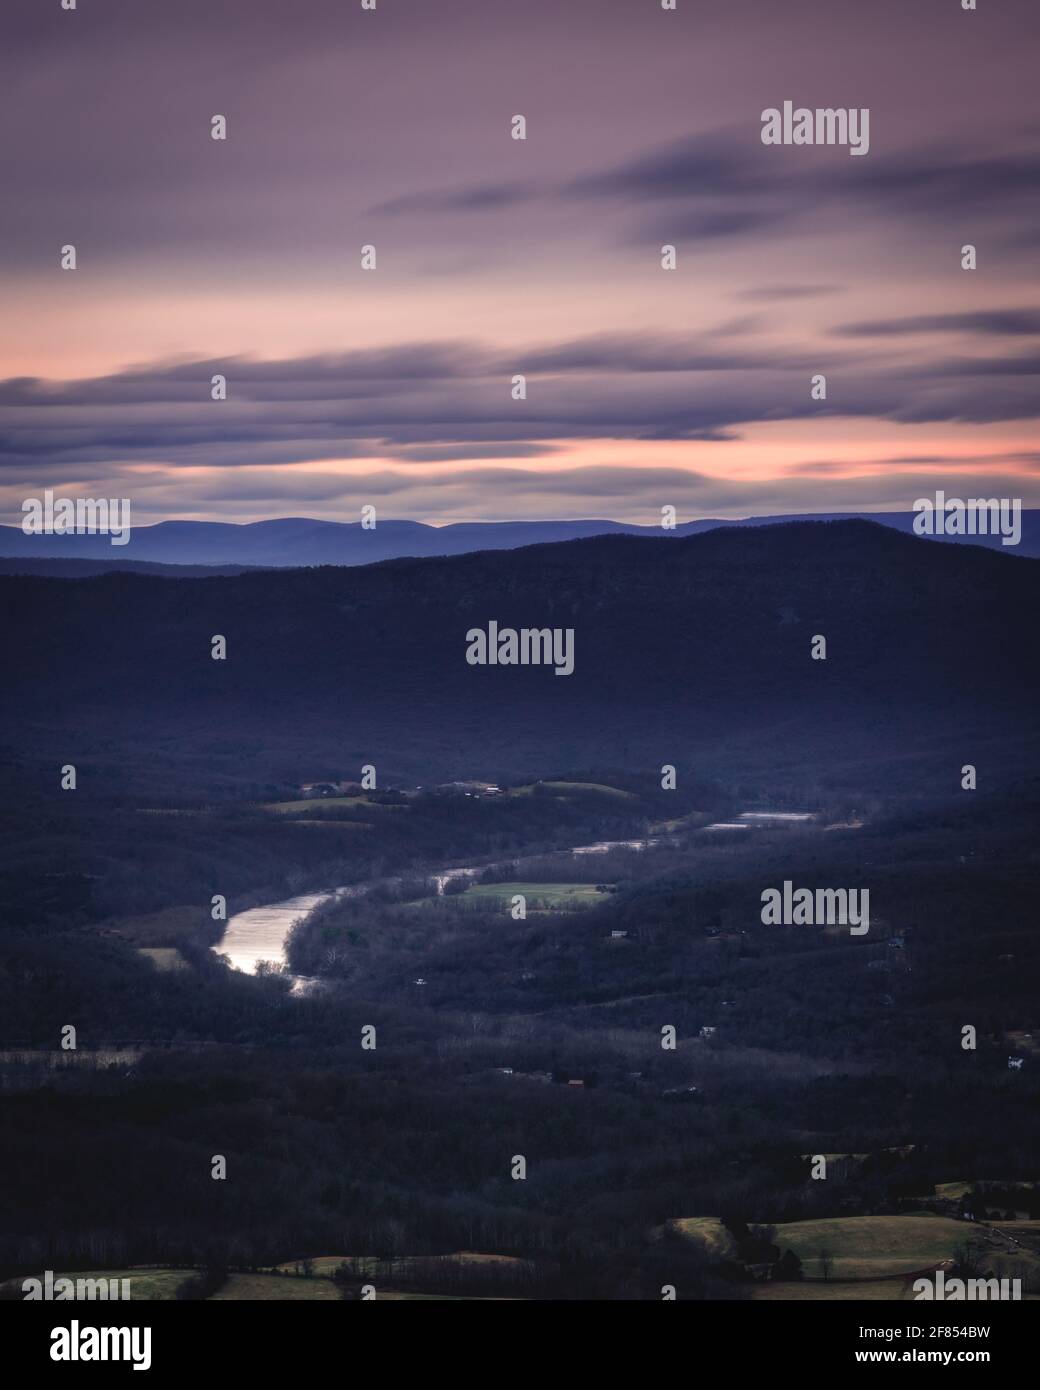 La rivière Shenandoah serpente à travers la vallée de Shenandoah en Virginie, vue depuis Skyline Drive au crépuscule. Banque D'Images